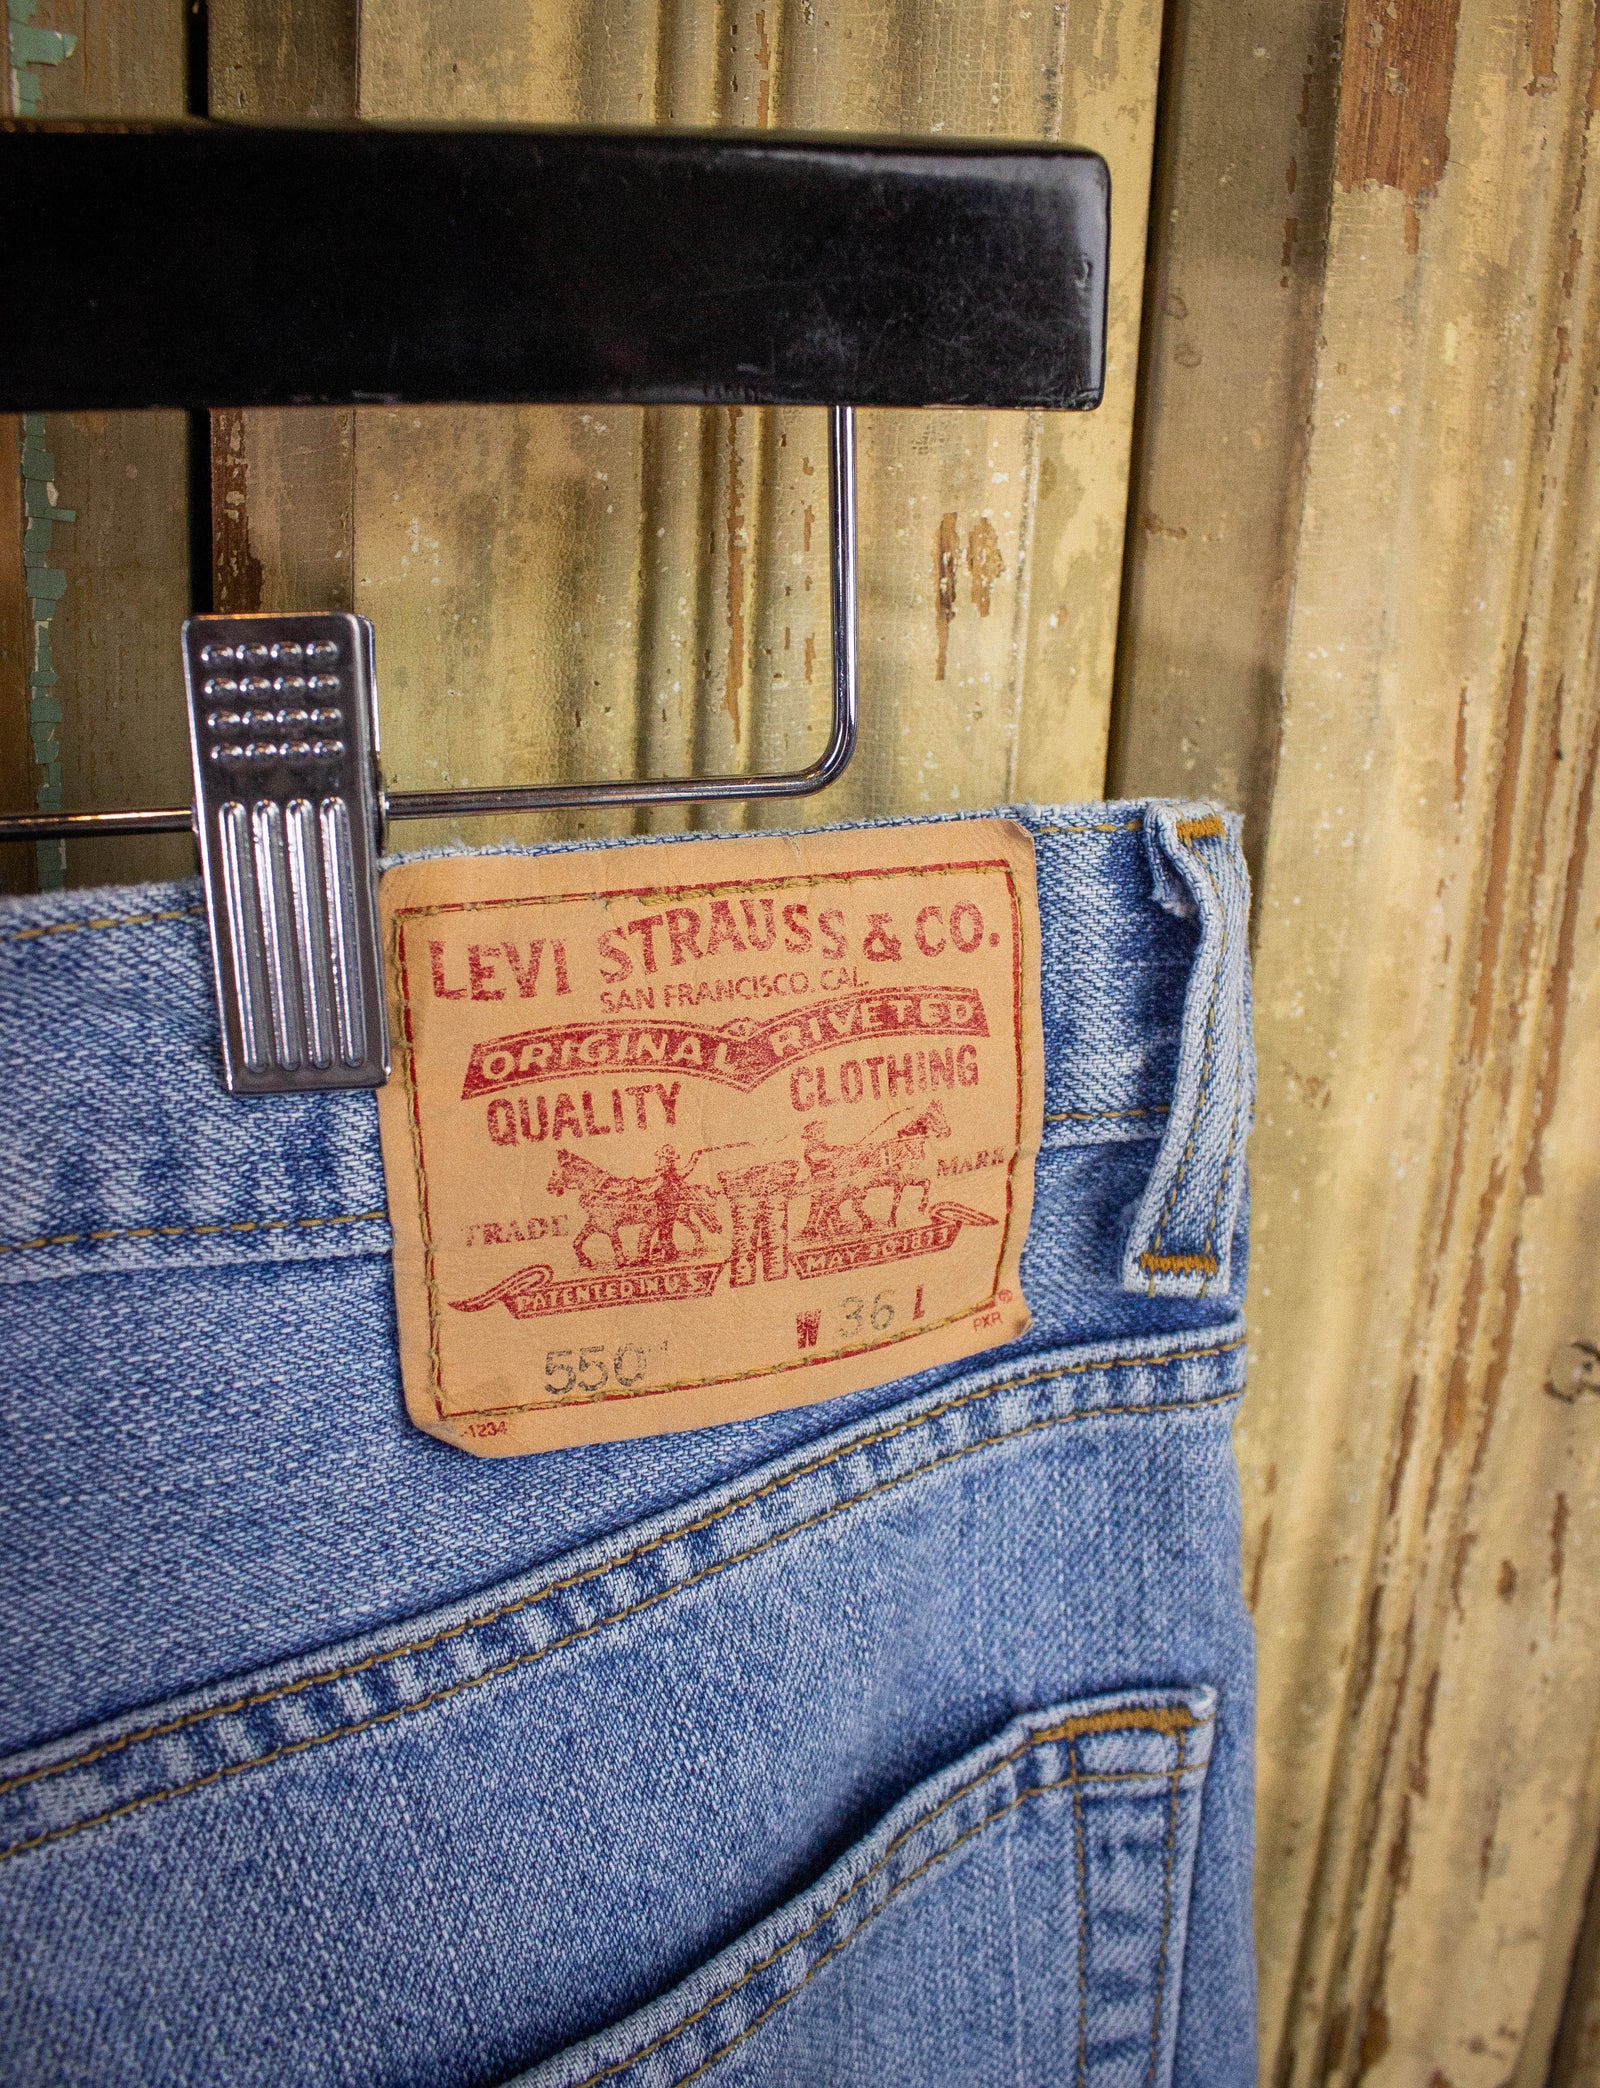 Vintage Levi's 550 Hemmed Denim Shorts Light Wash 36w